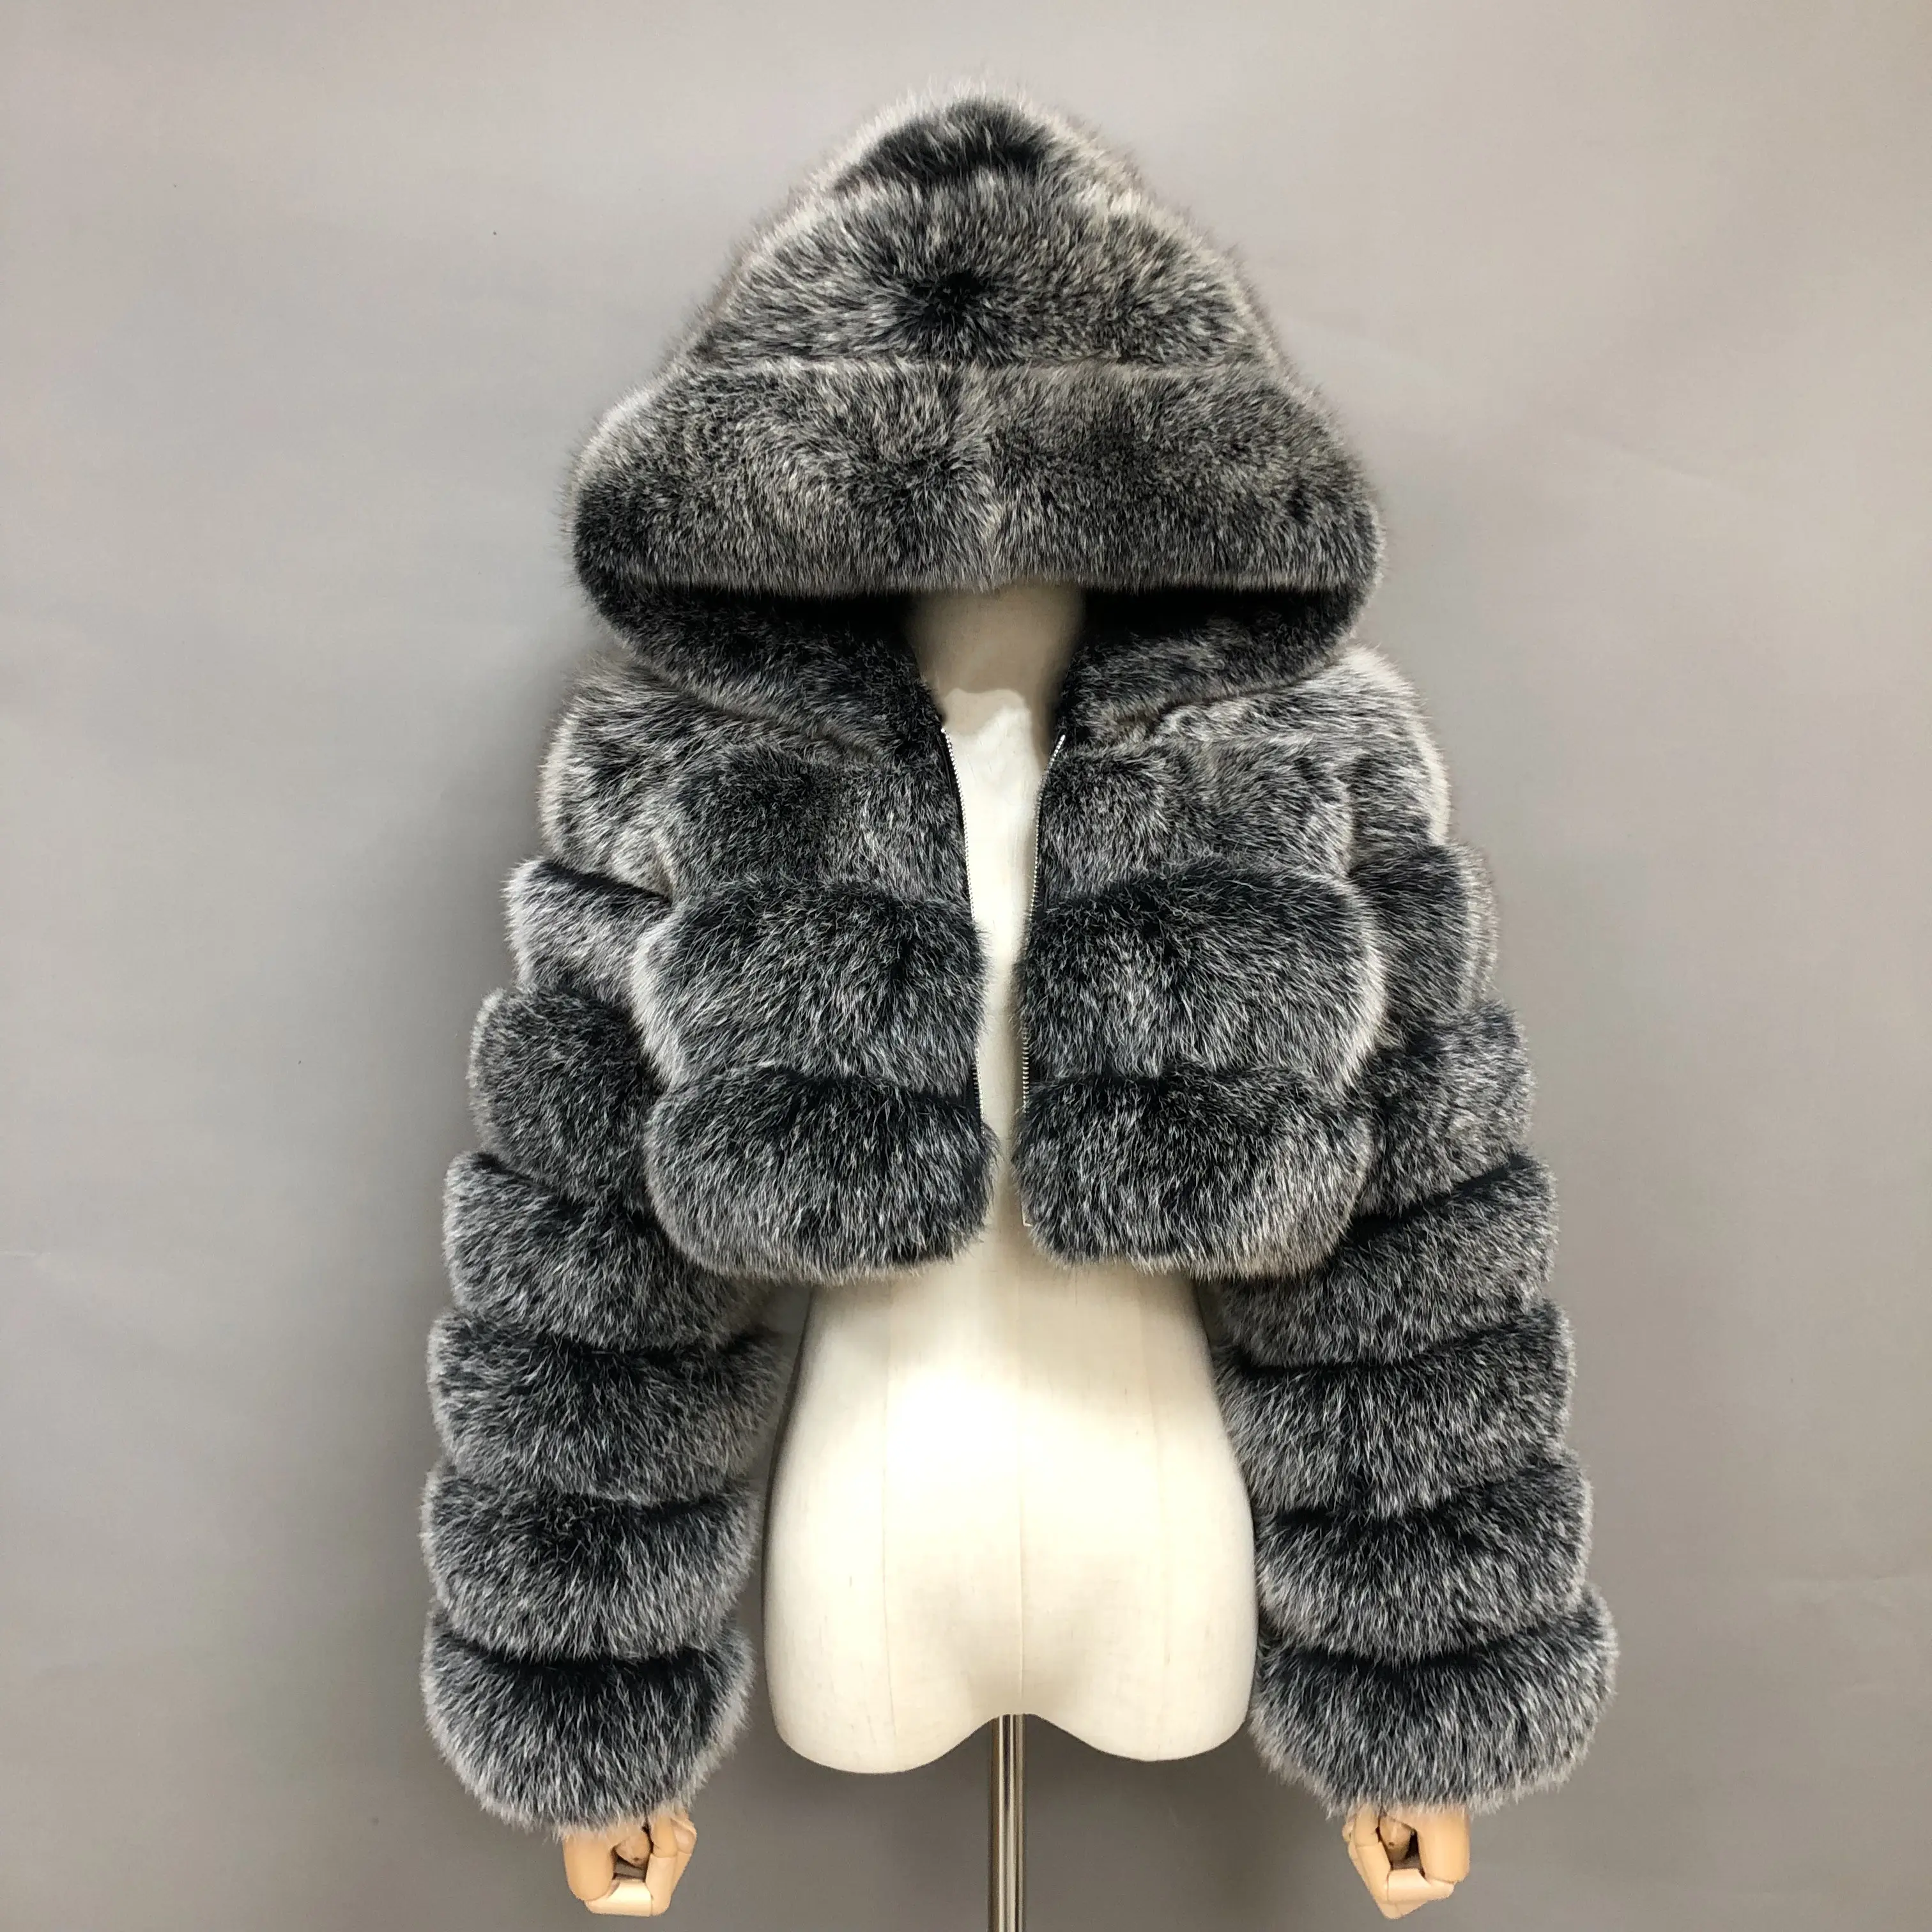 Mantel Crop Top Bulu Rubah Asli Mode Musim Dingin Jaket Bulu Hitam Wanita Lengan Panjang Hangat Tebal dengan Hoodie